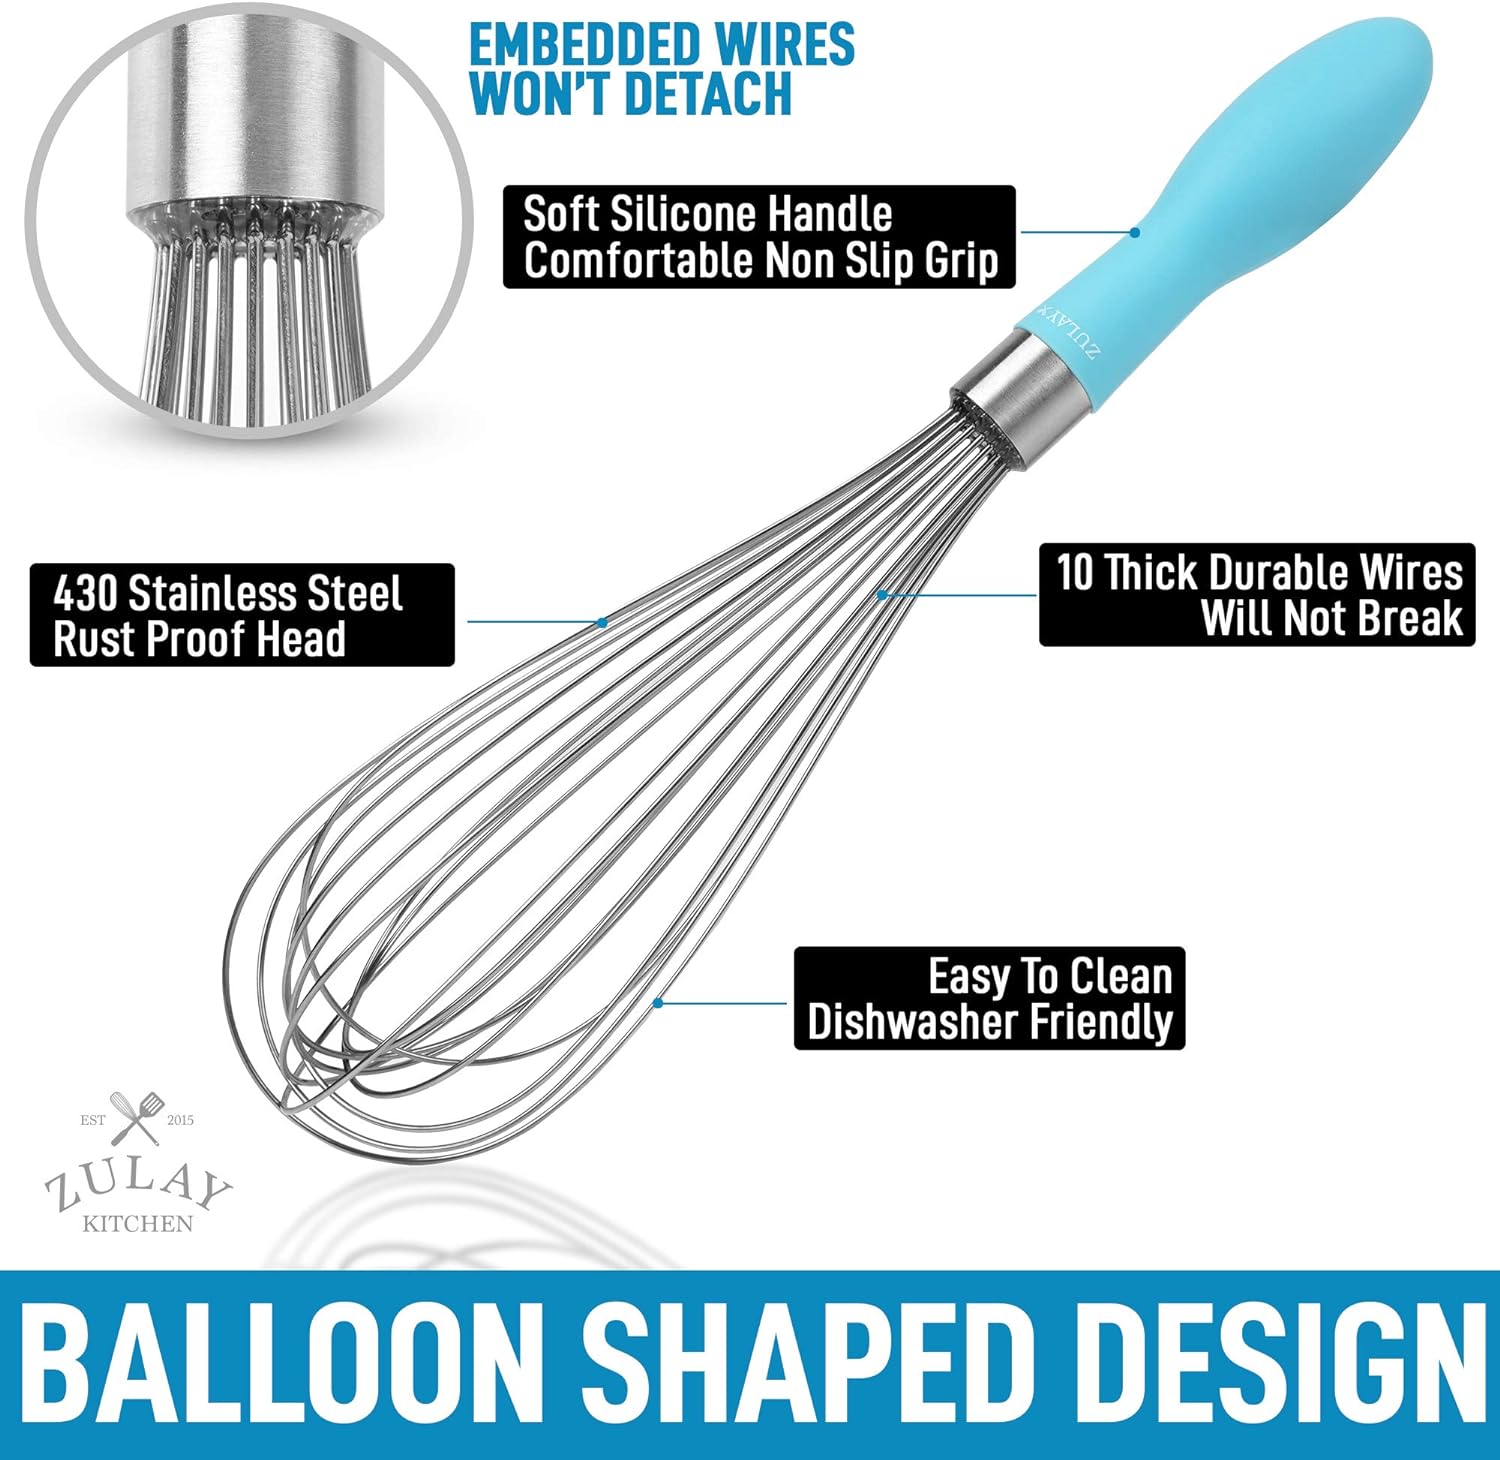 12" Balloon Whisk